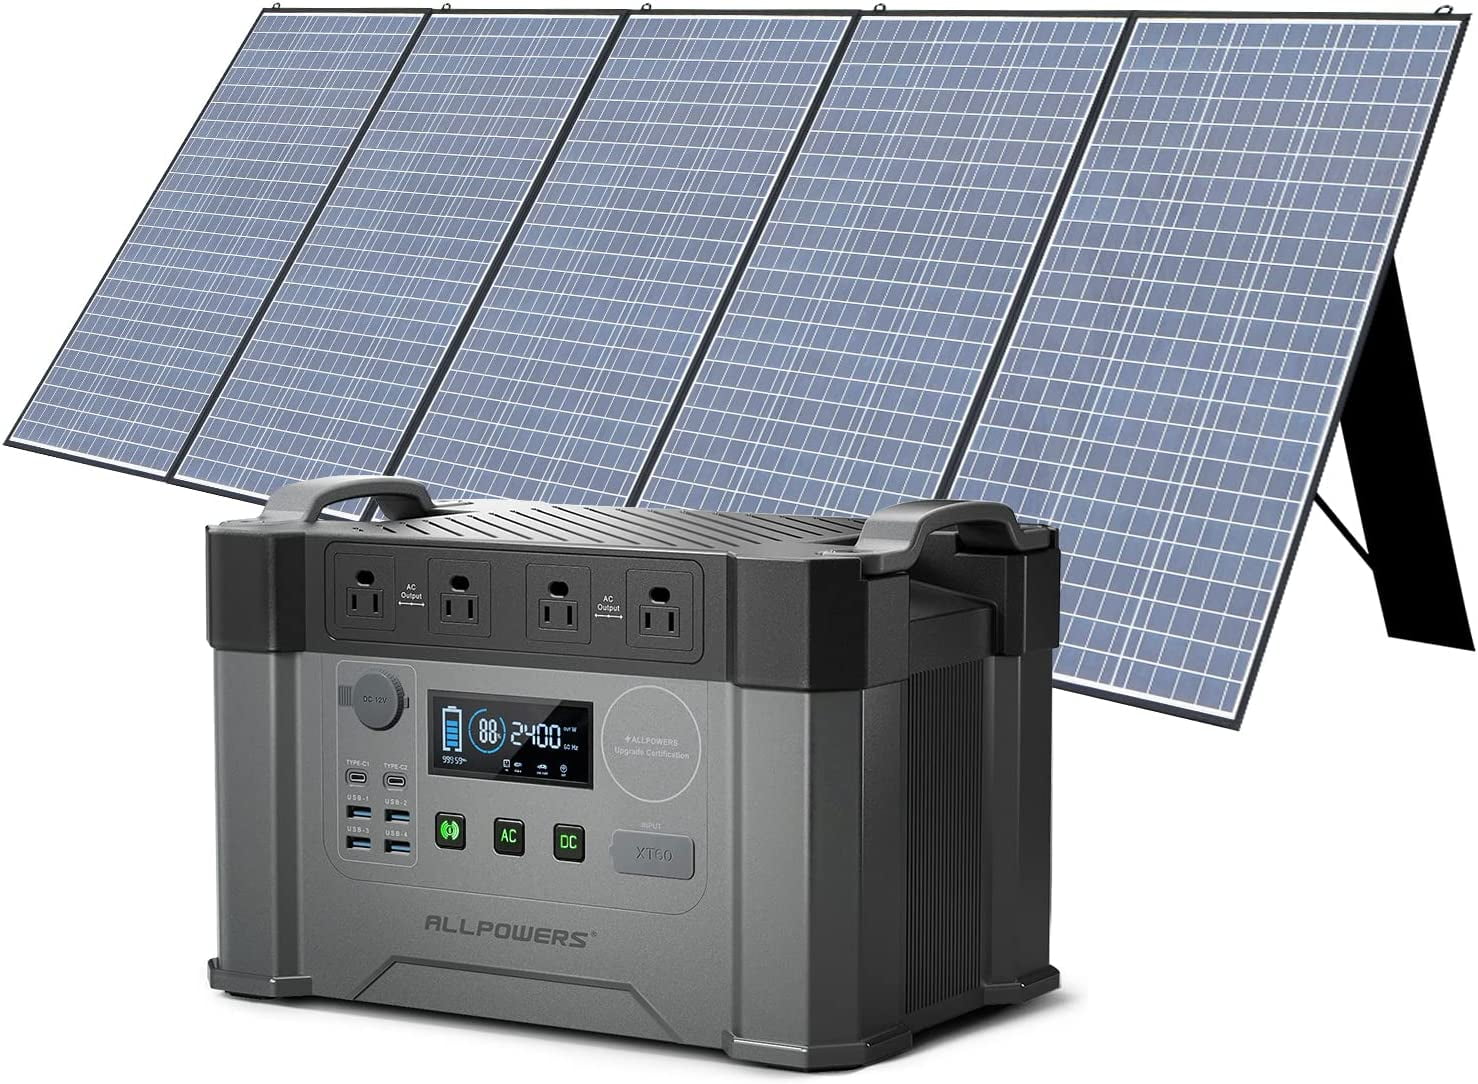 Bloopower Solar 12V 1000 Watt 1000W 1500W 2000W 3000W 110V 230V